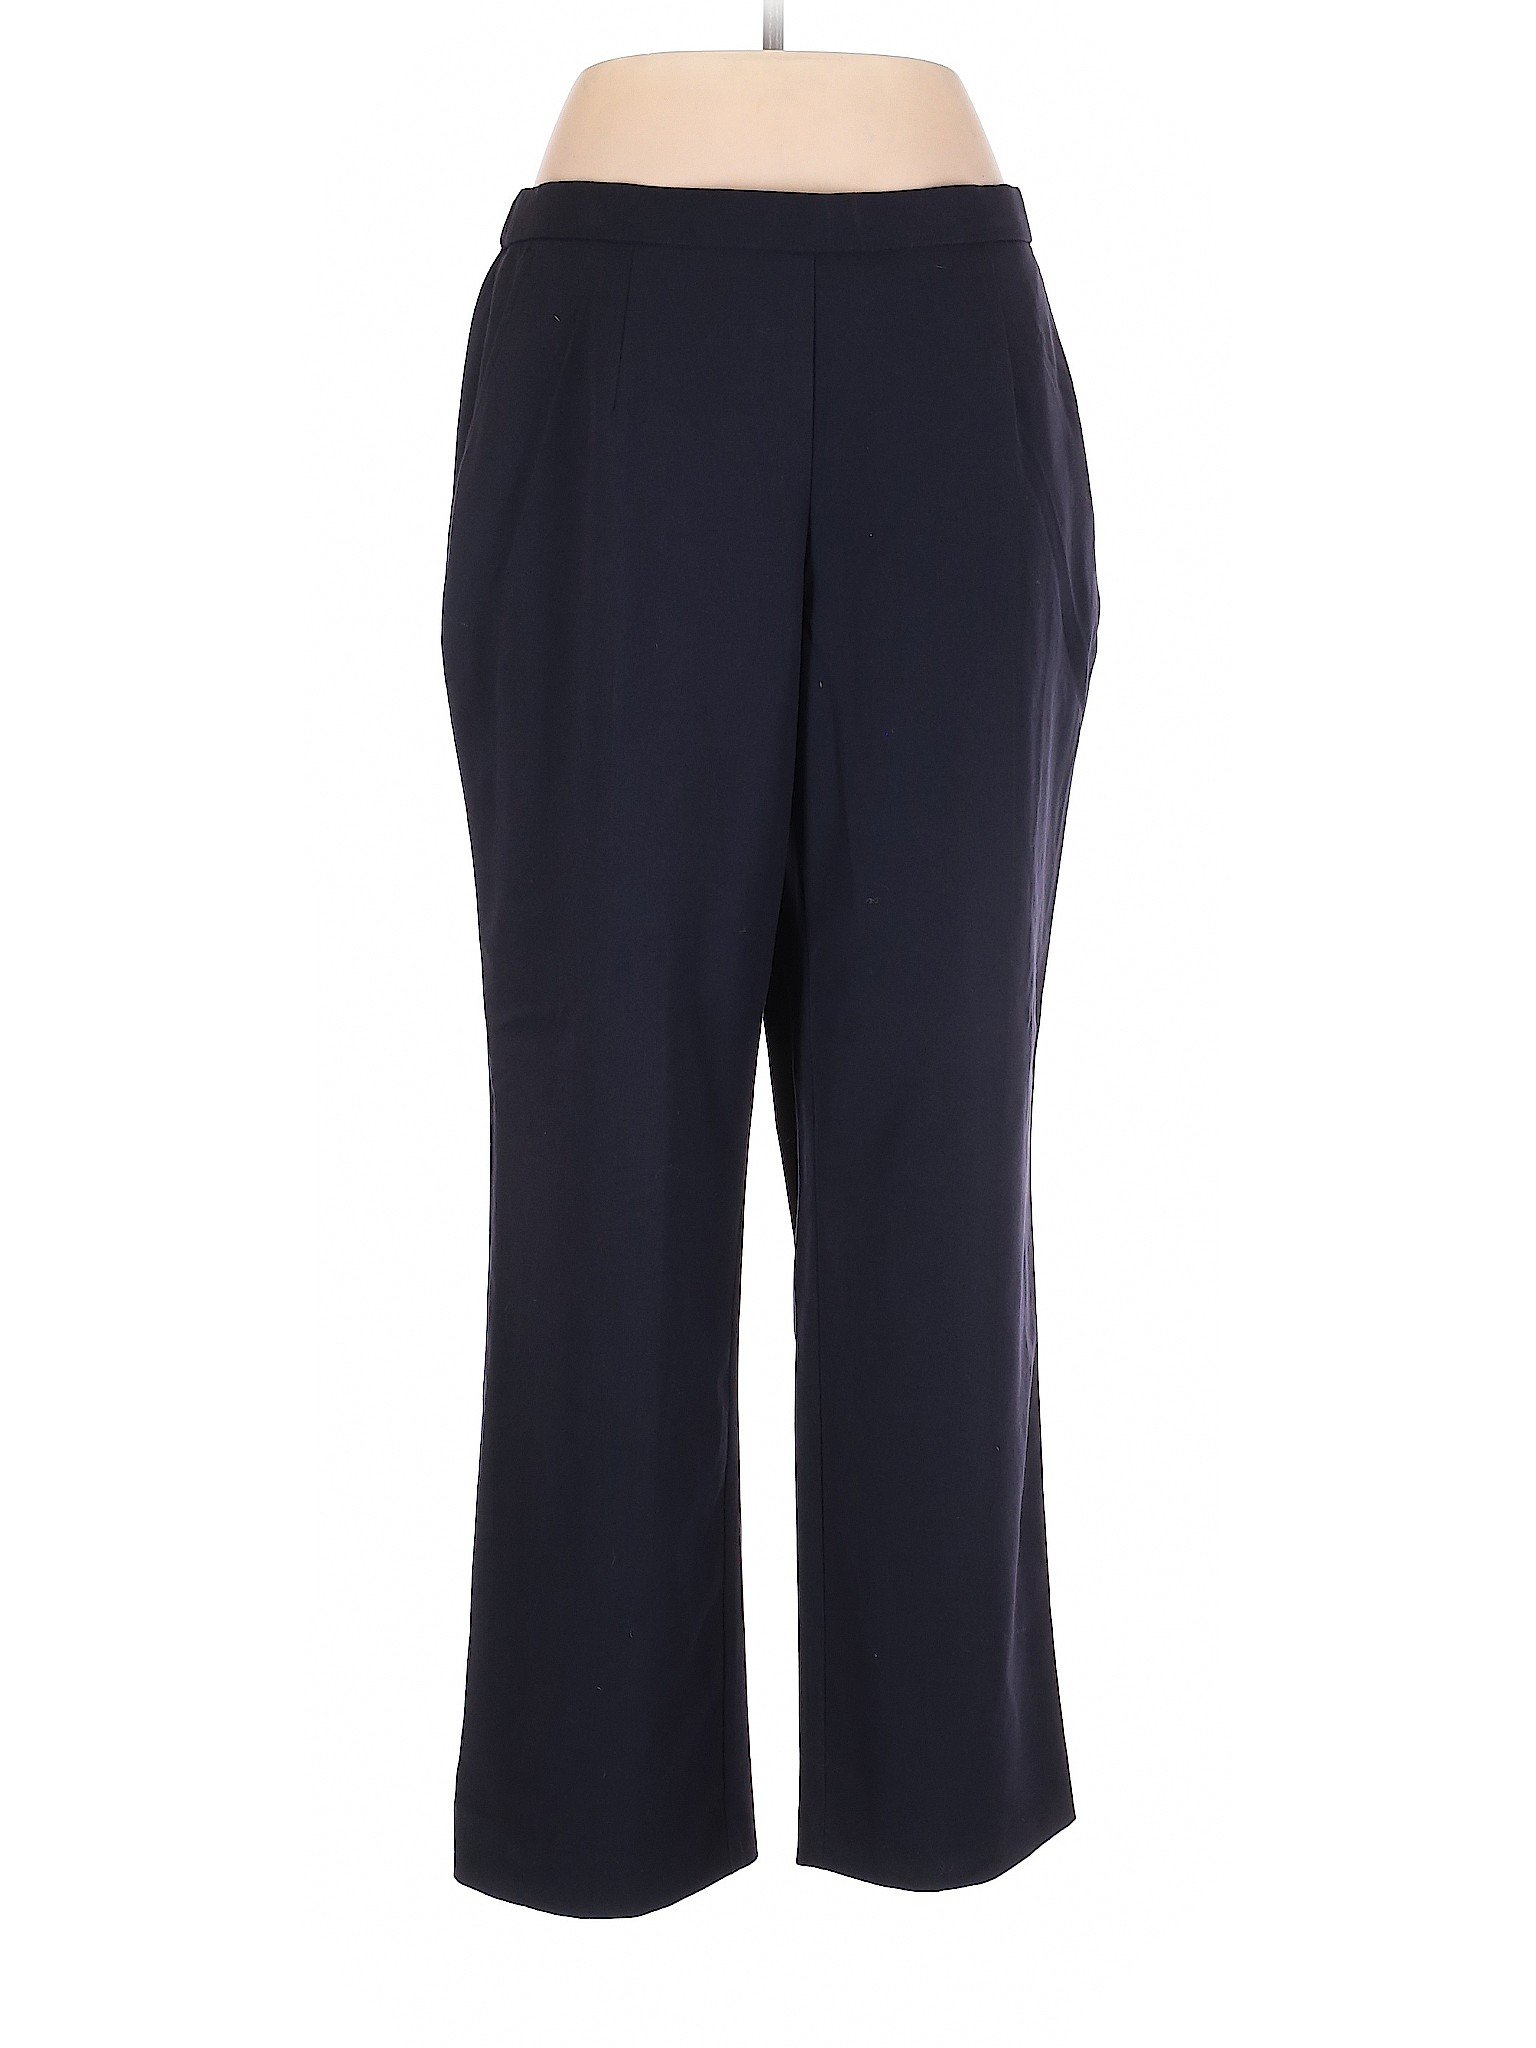 JM Collection Women Blue Casual Pants 14 | eBay